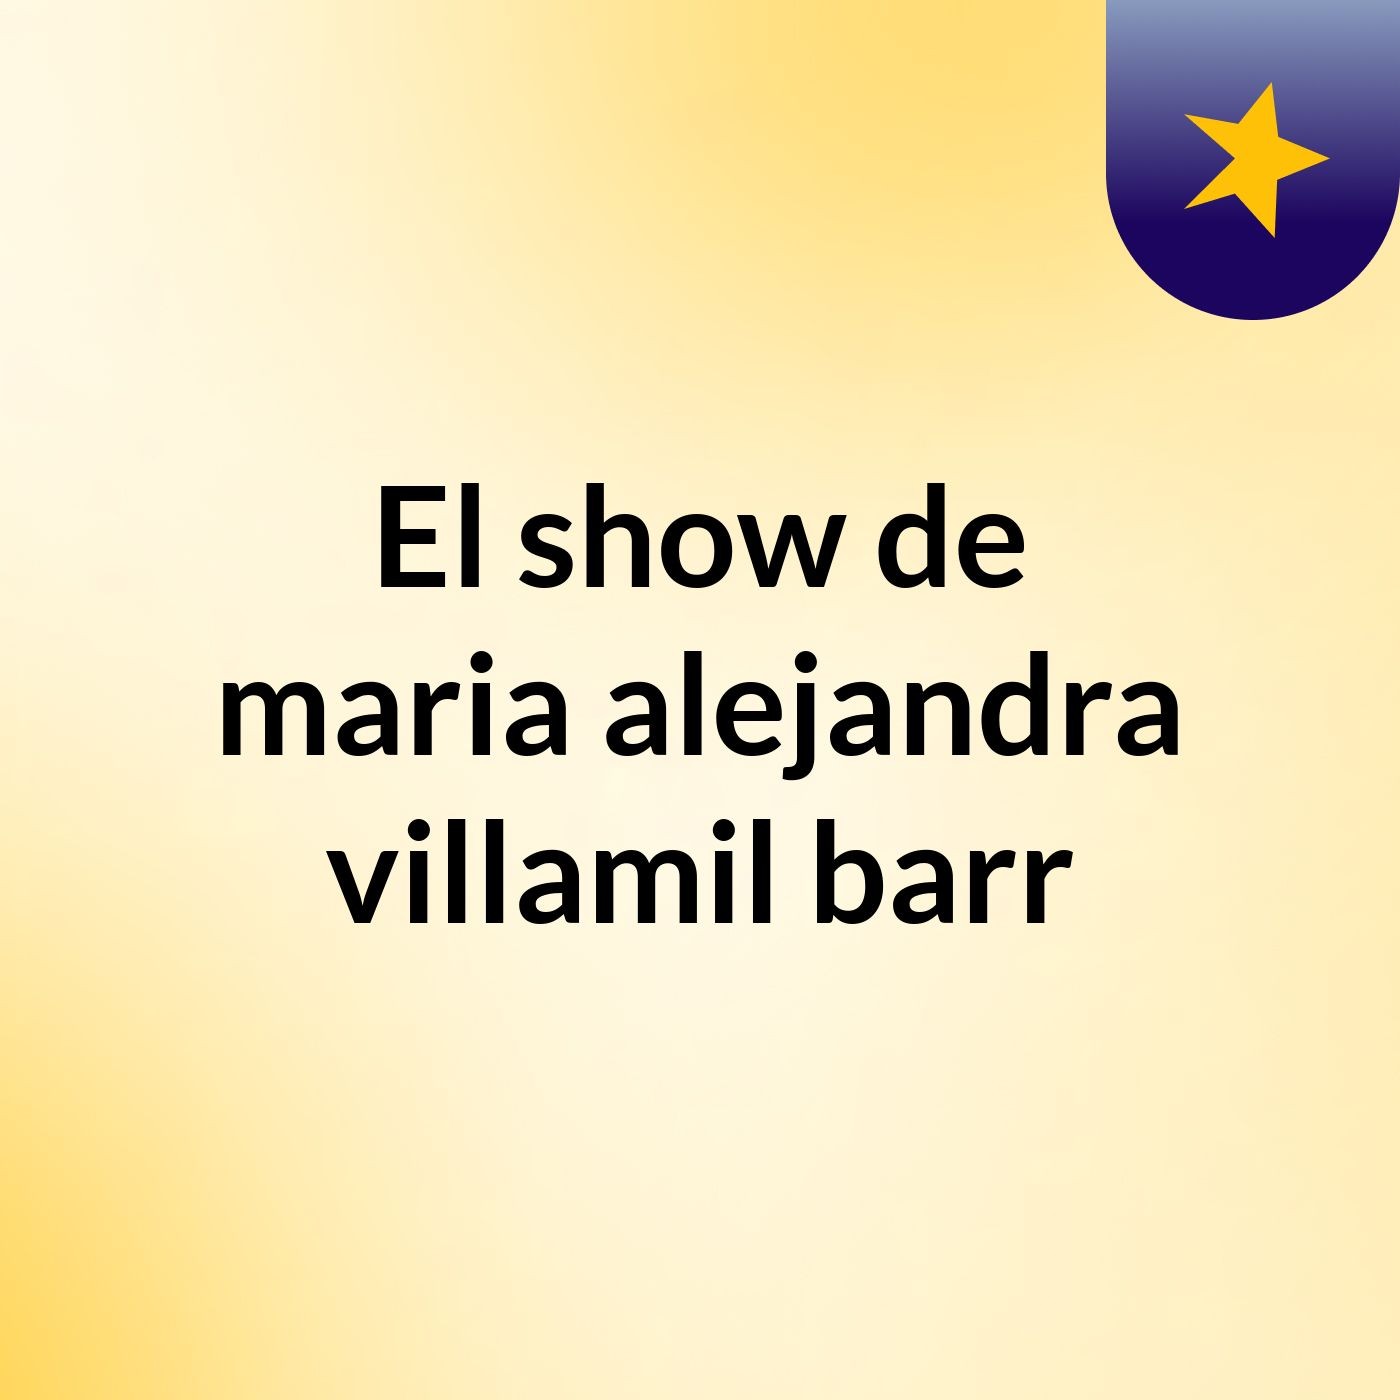 El show de maria alejandra villamil barr